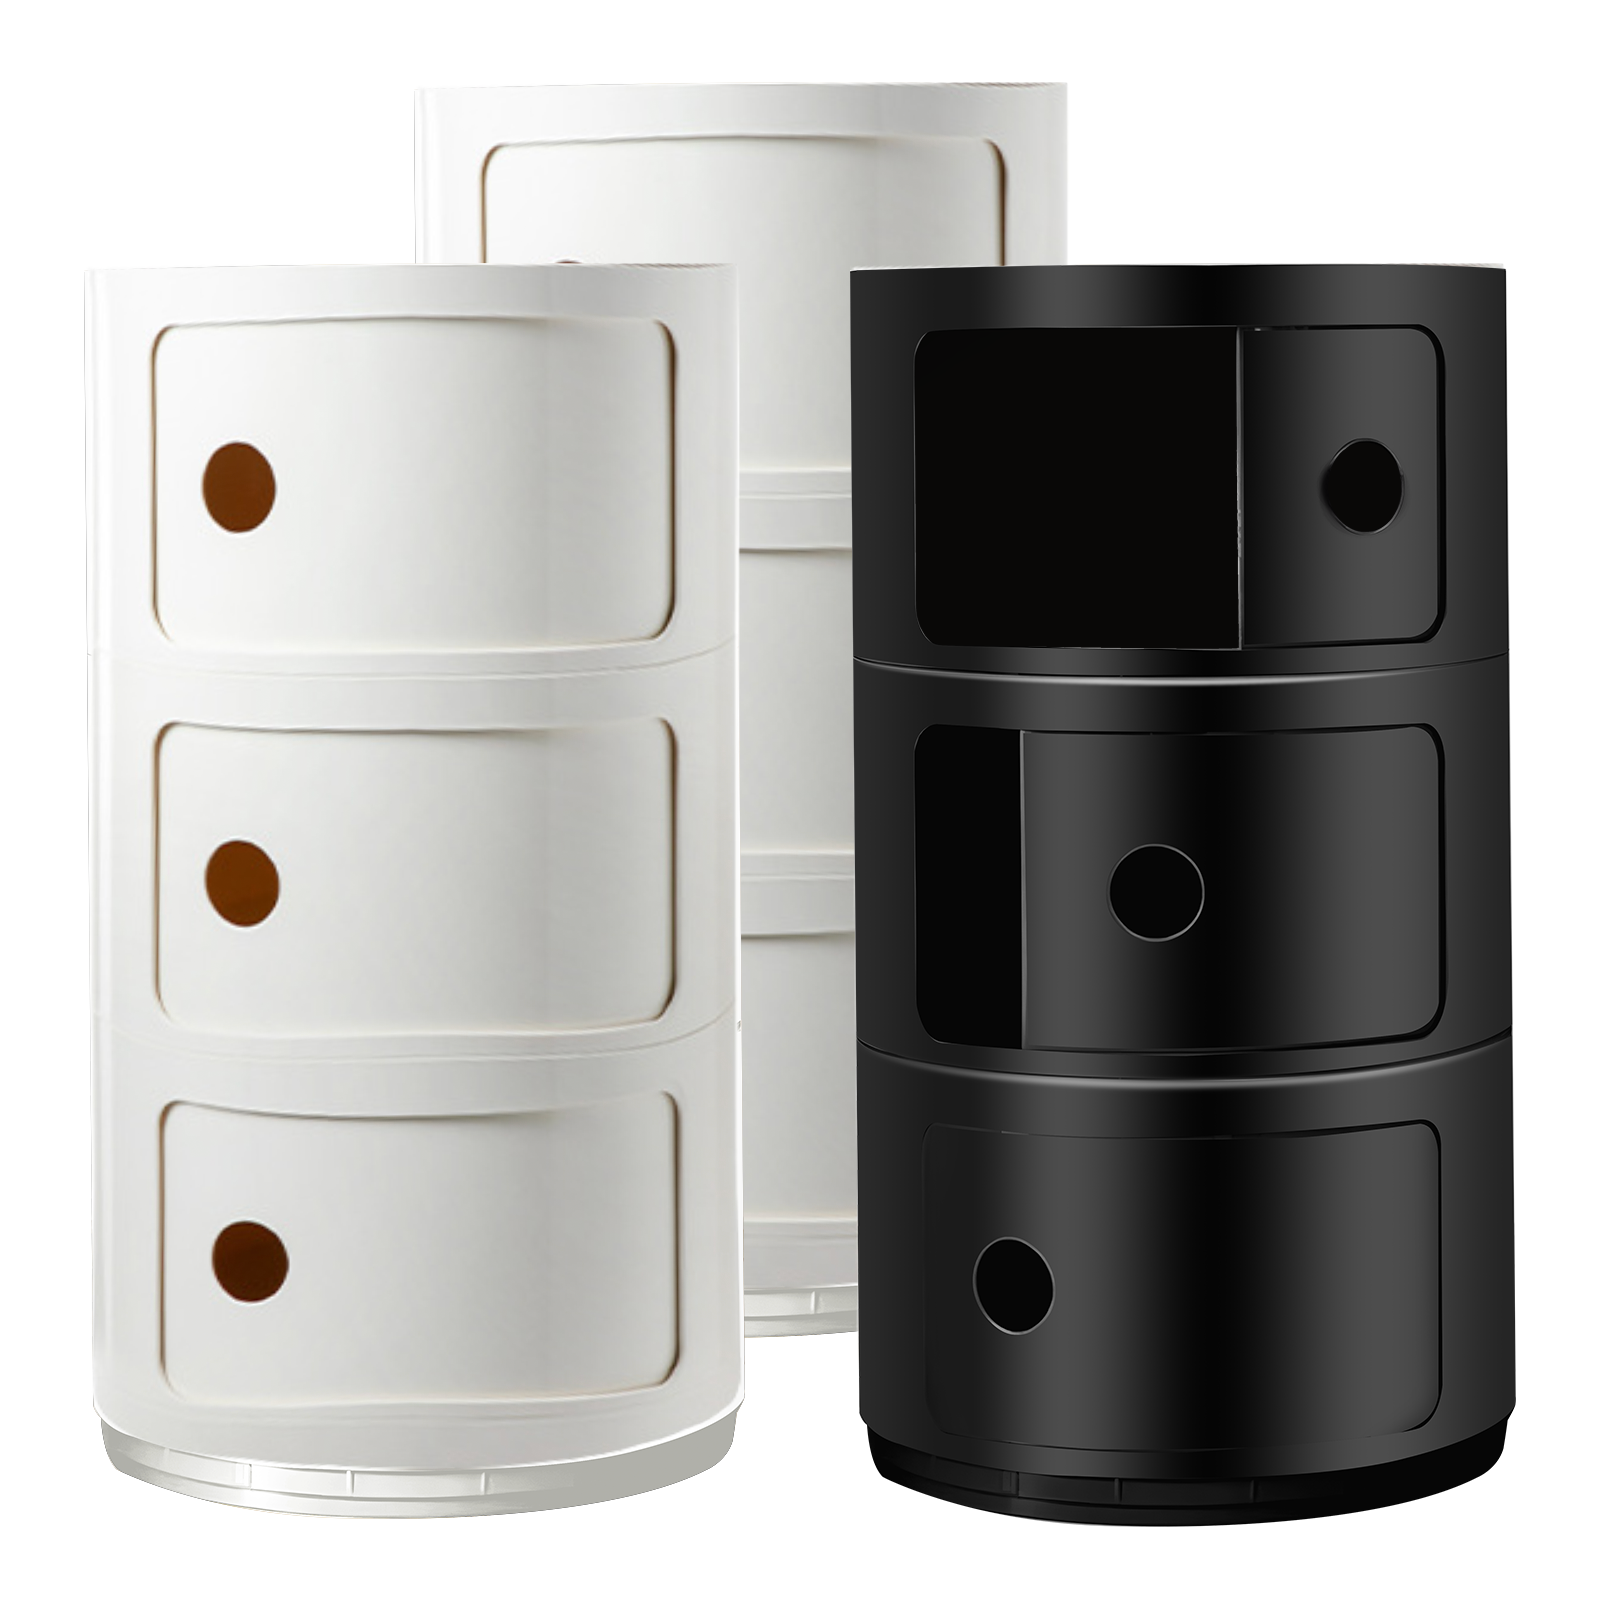 Replica Componibili Round Storage Cabinet - 4 Sizes